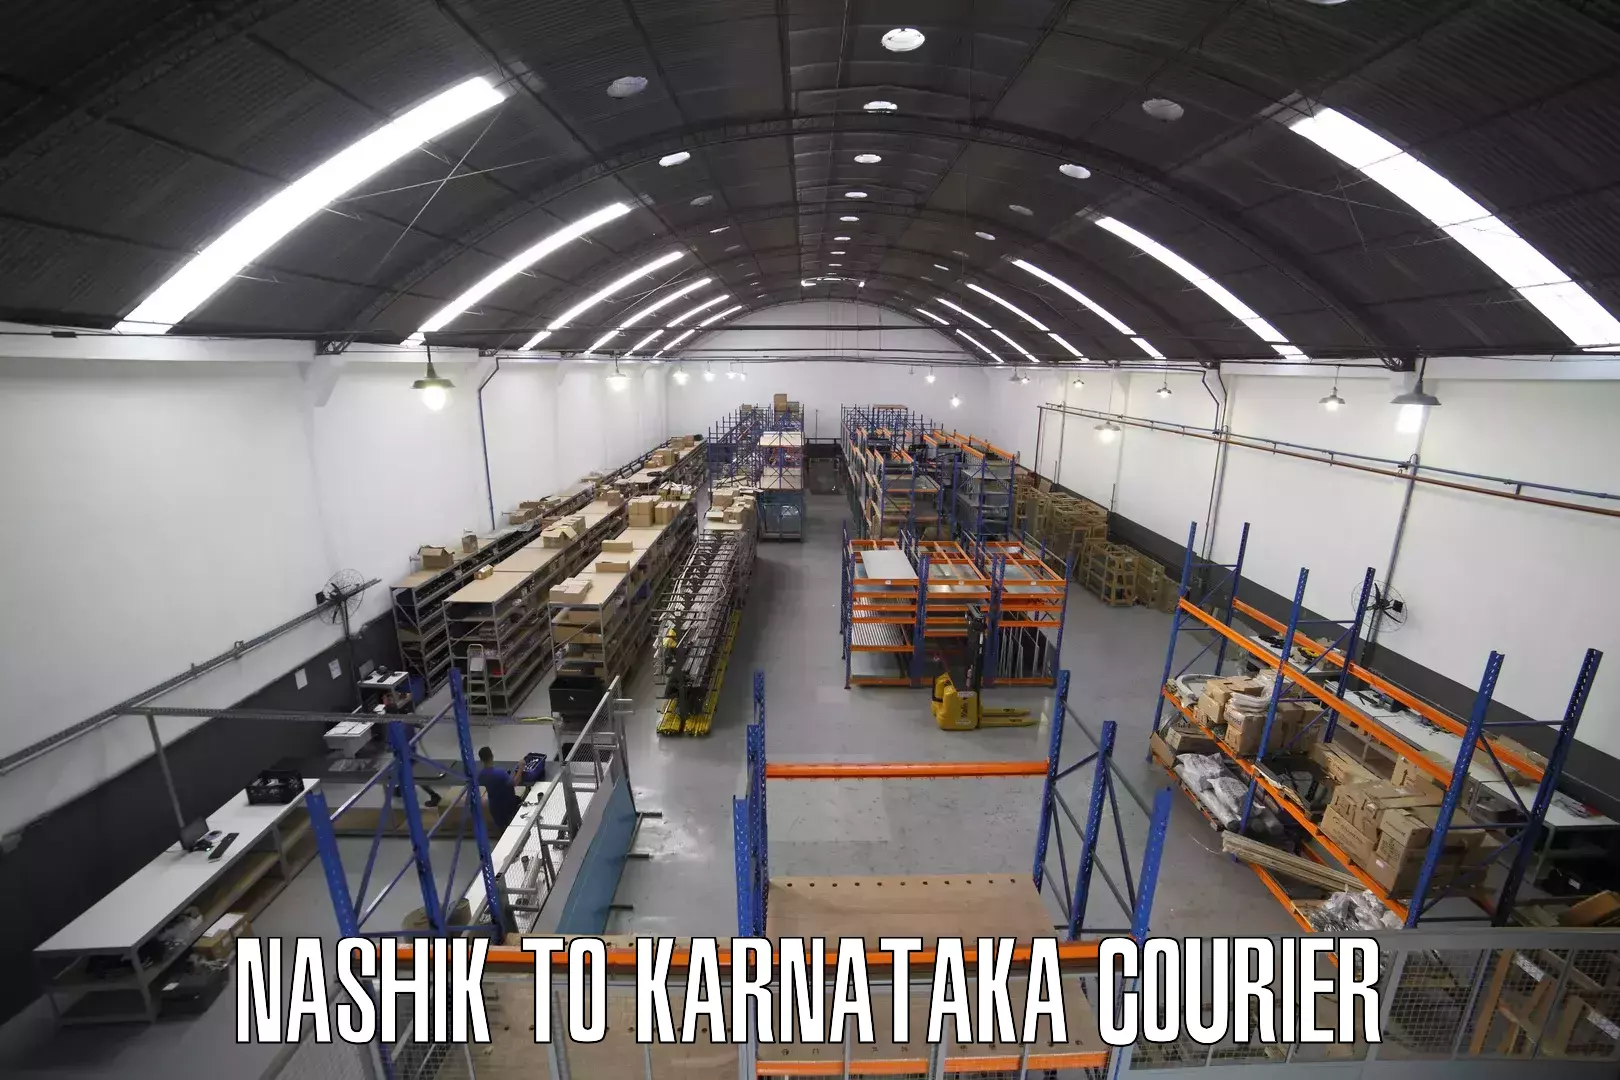 Comprehensive shipping services Nashik to Karnataka